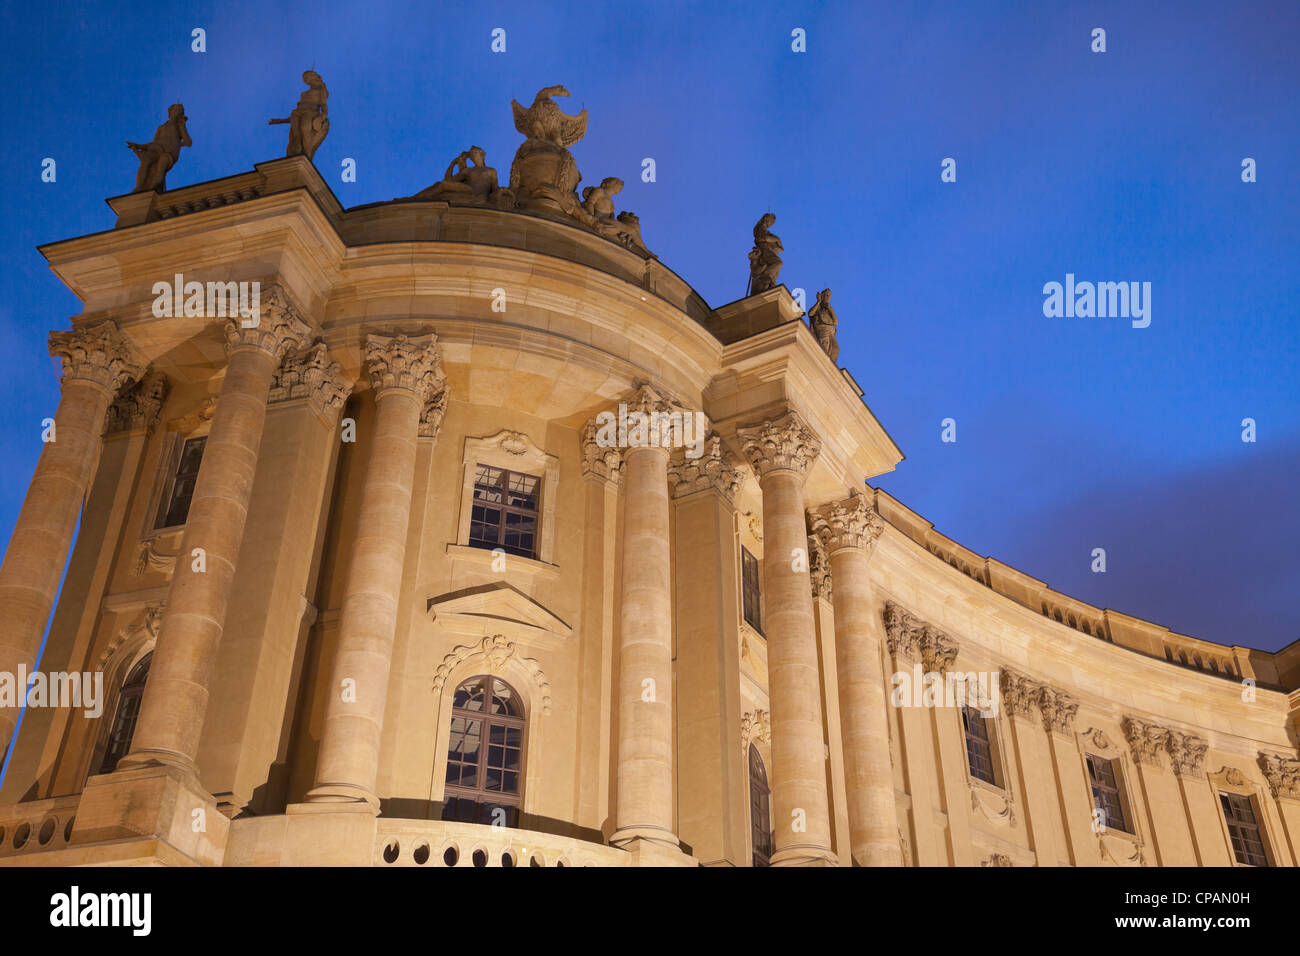 Alte Bibliothek, maintenant l'Université Humboldt, Berlin, Allemagne Banque D'Images